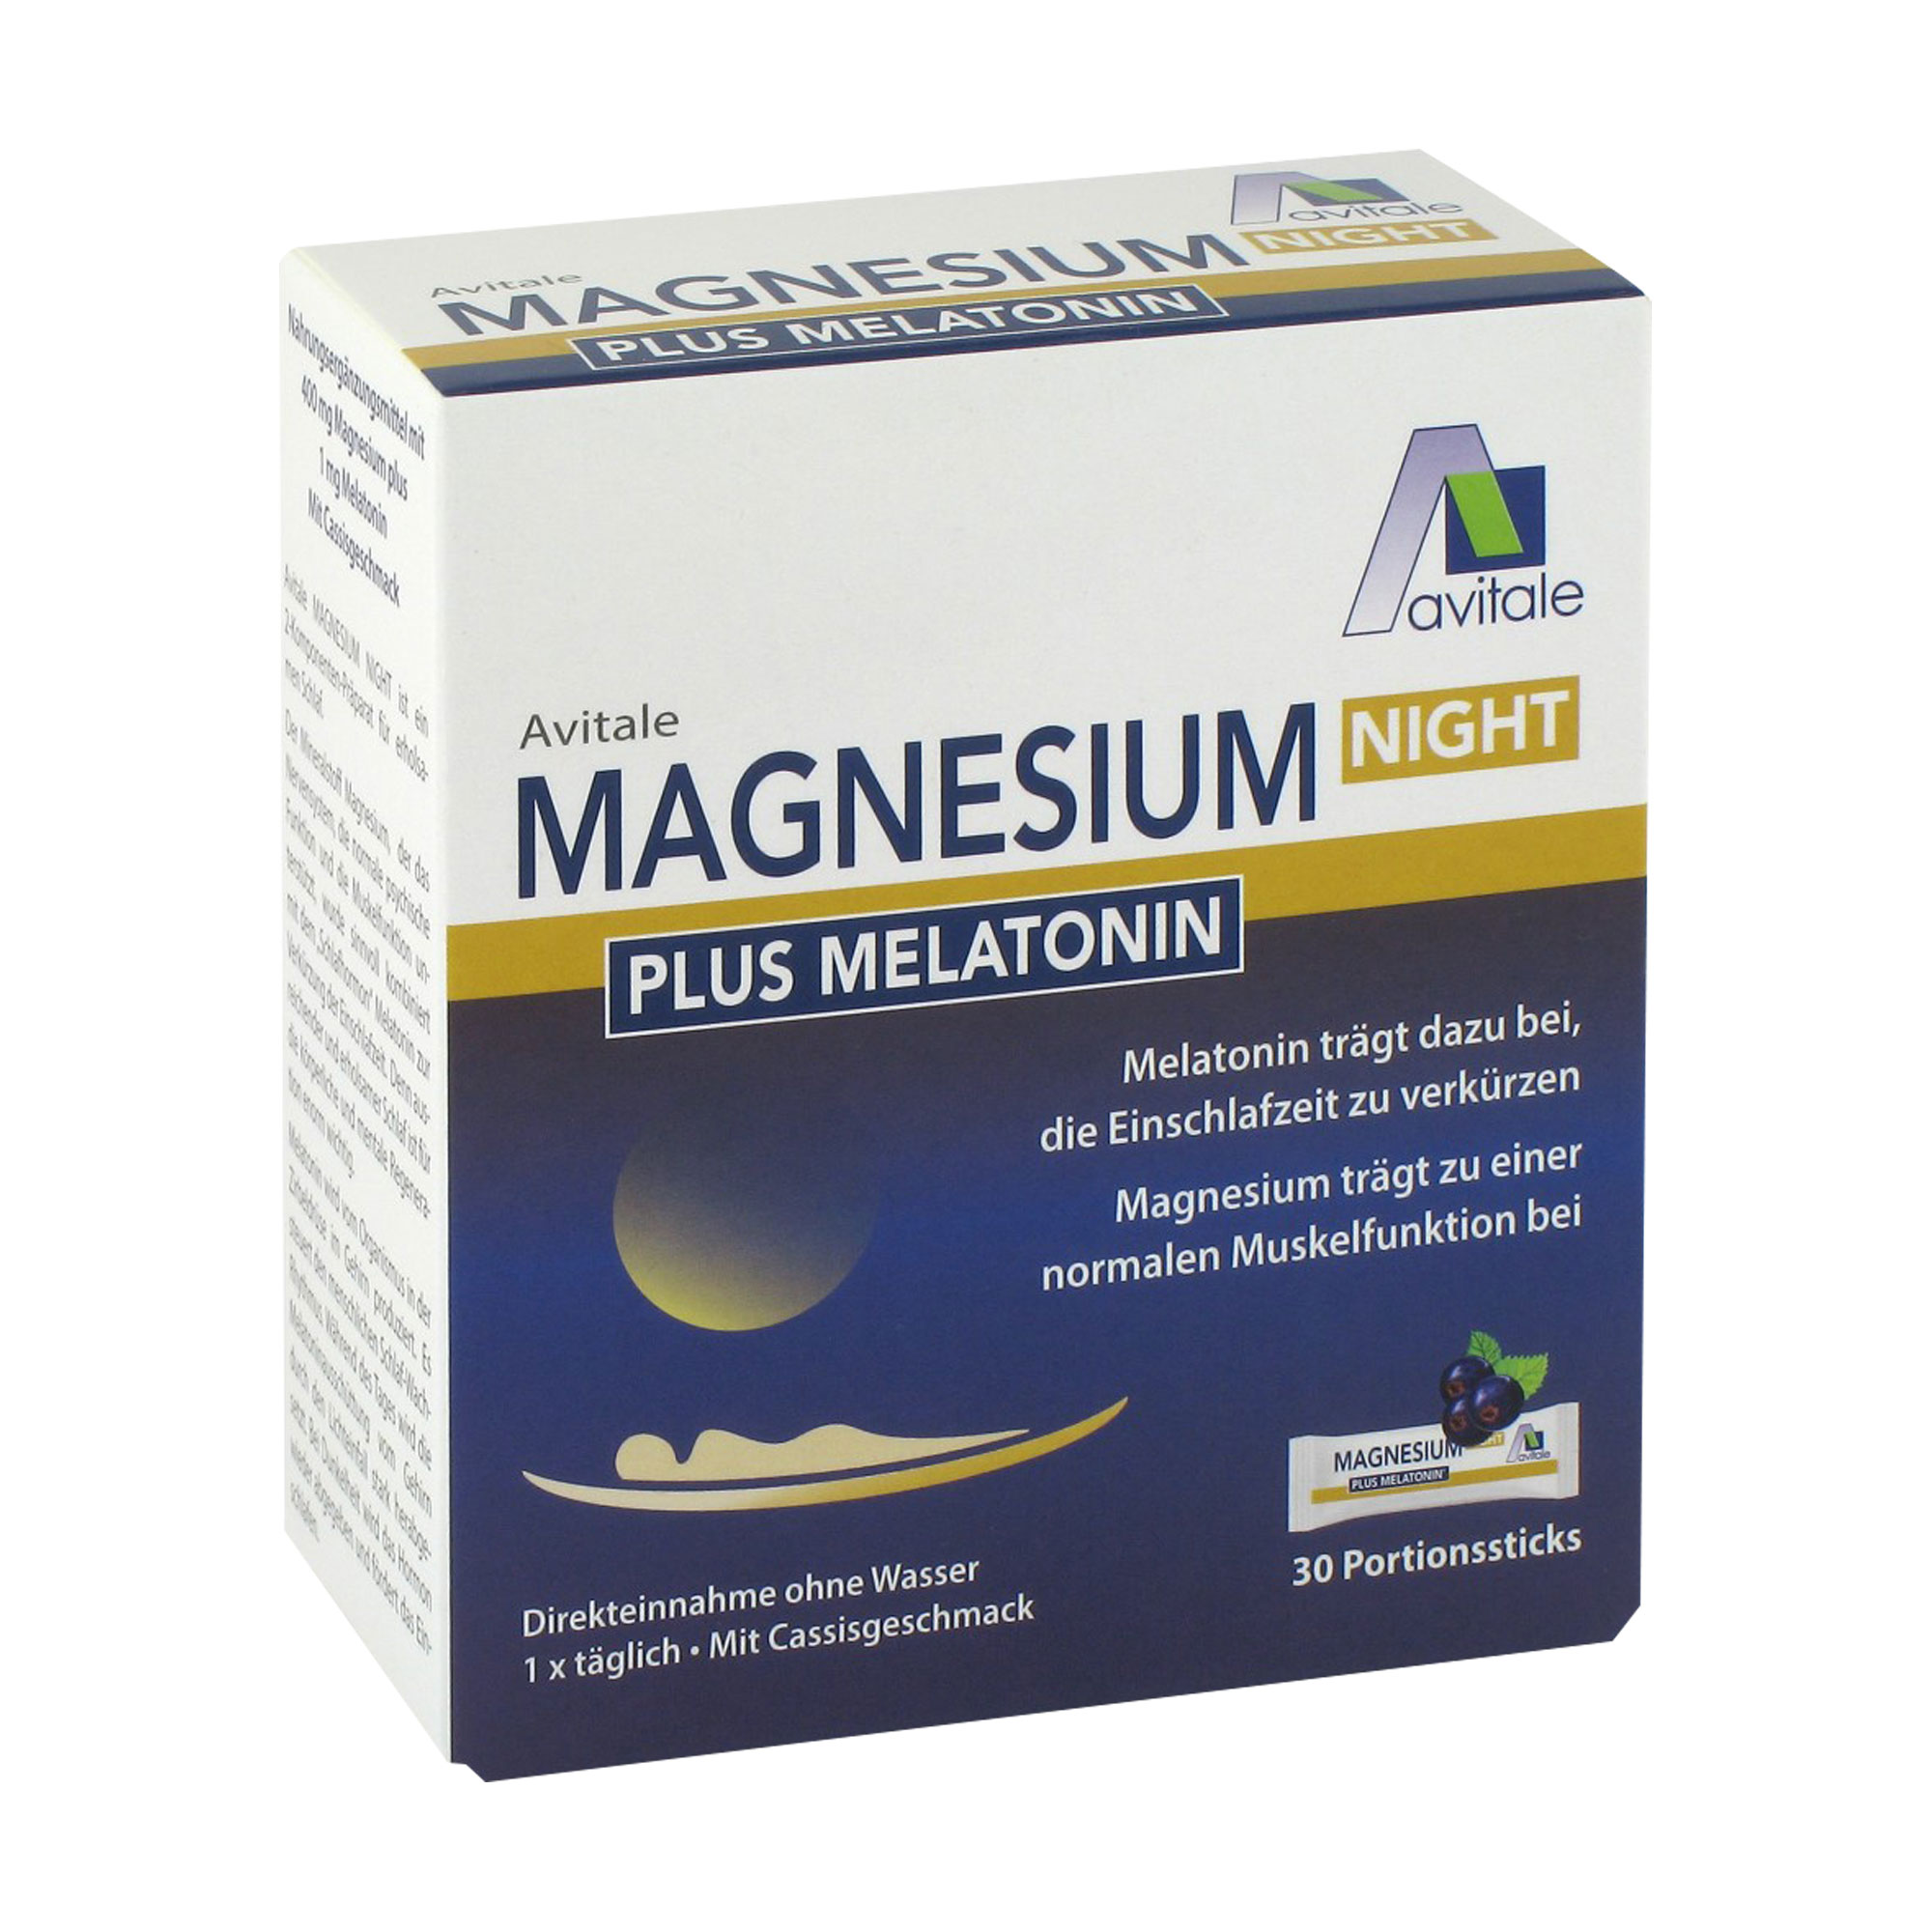 Nahrungsergänzungsmittel mit 400 mg Magnesium und Melatonin. Mit Cassis-Geschmack.